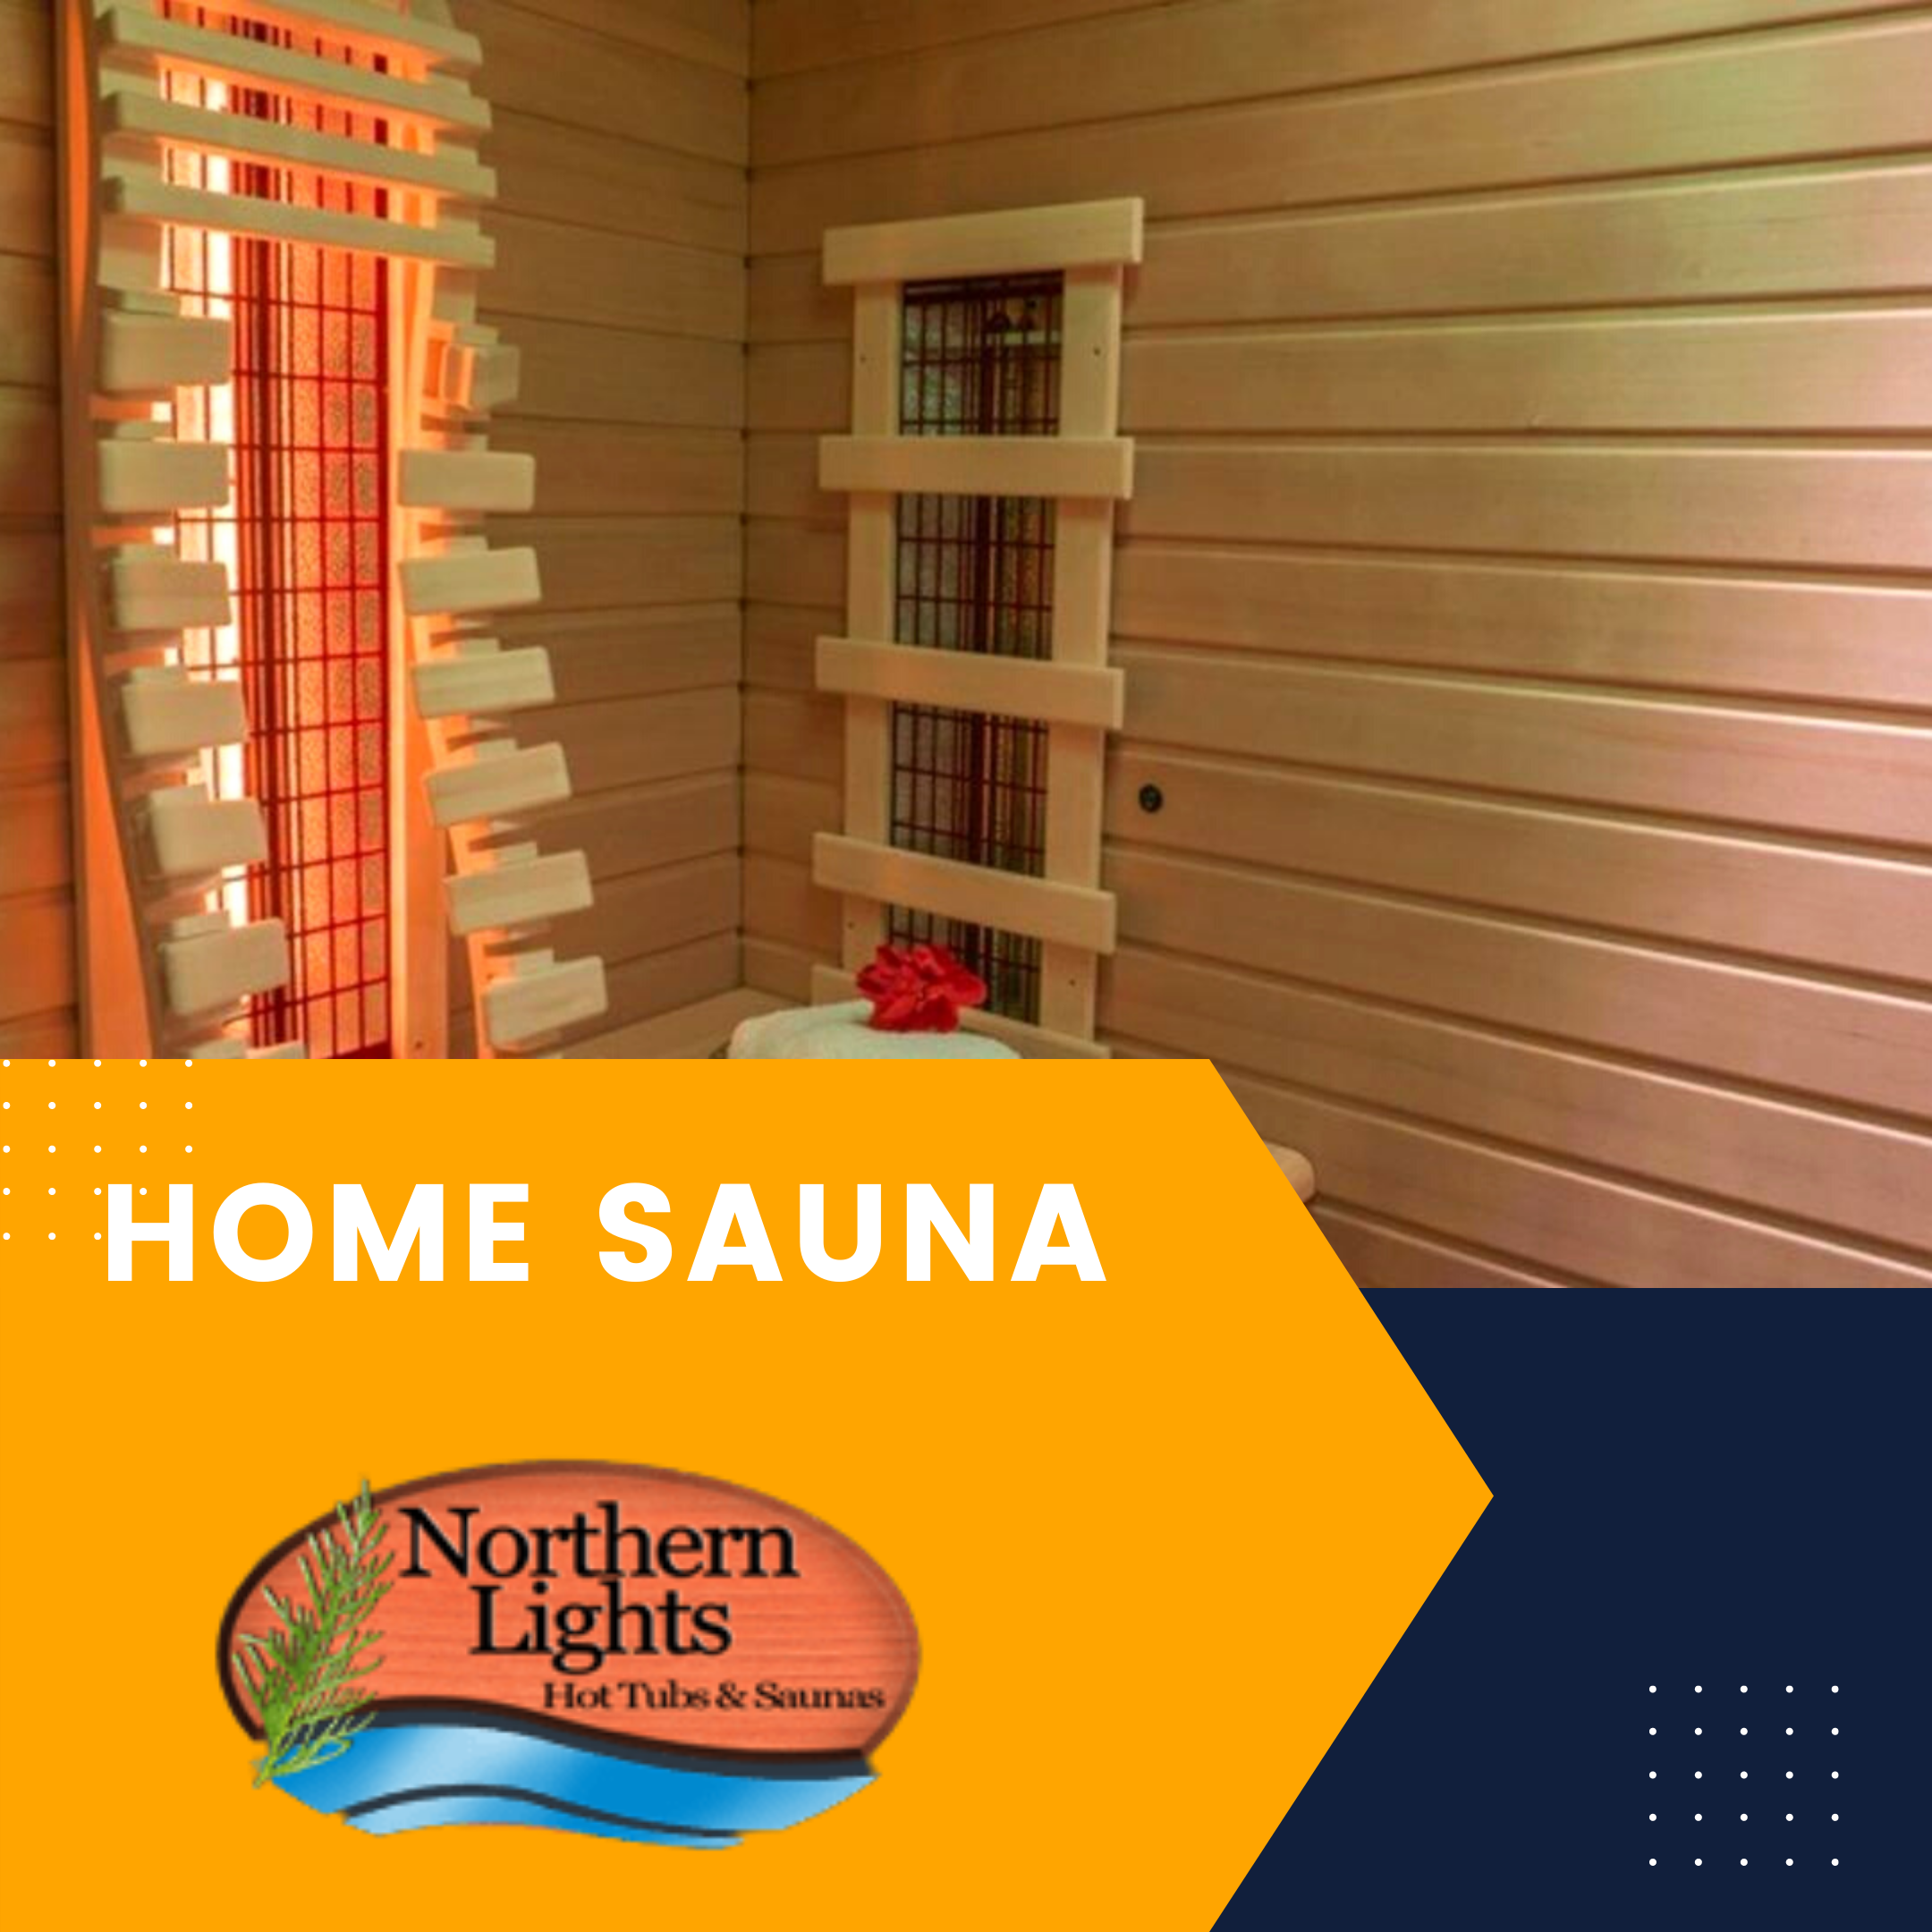 Home Saunas